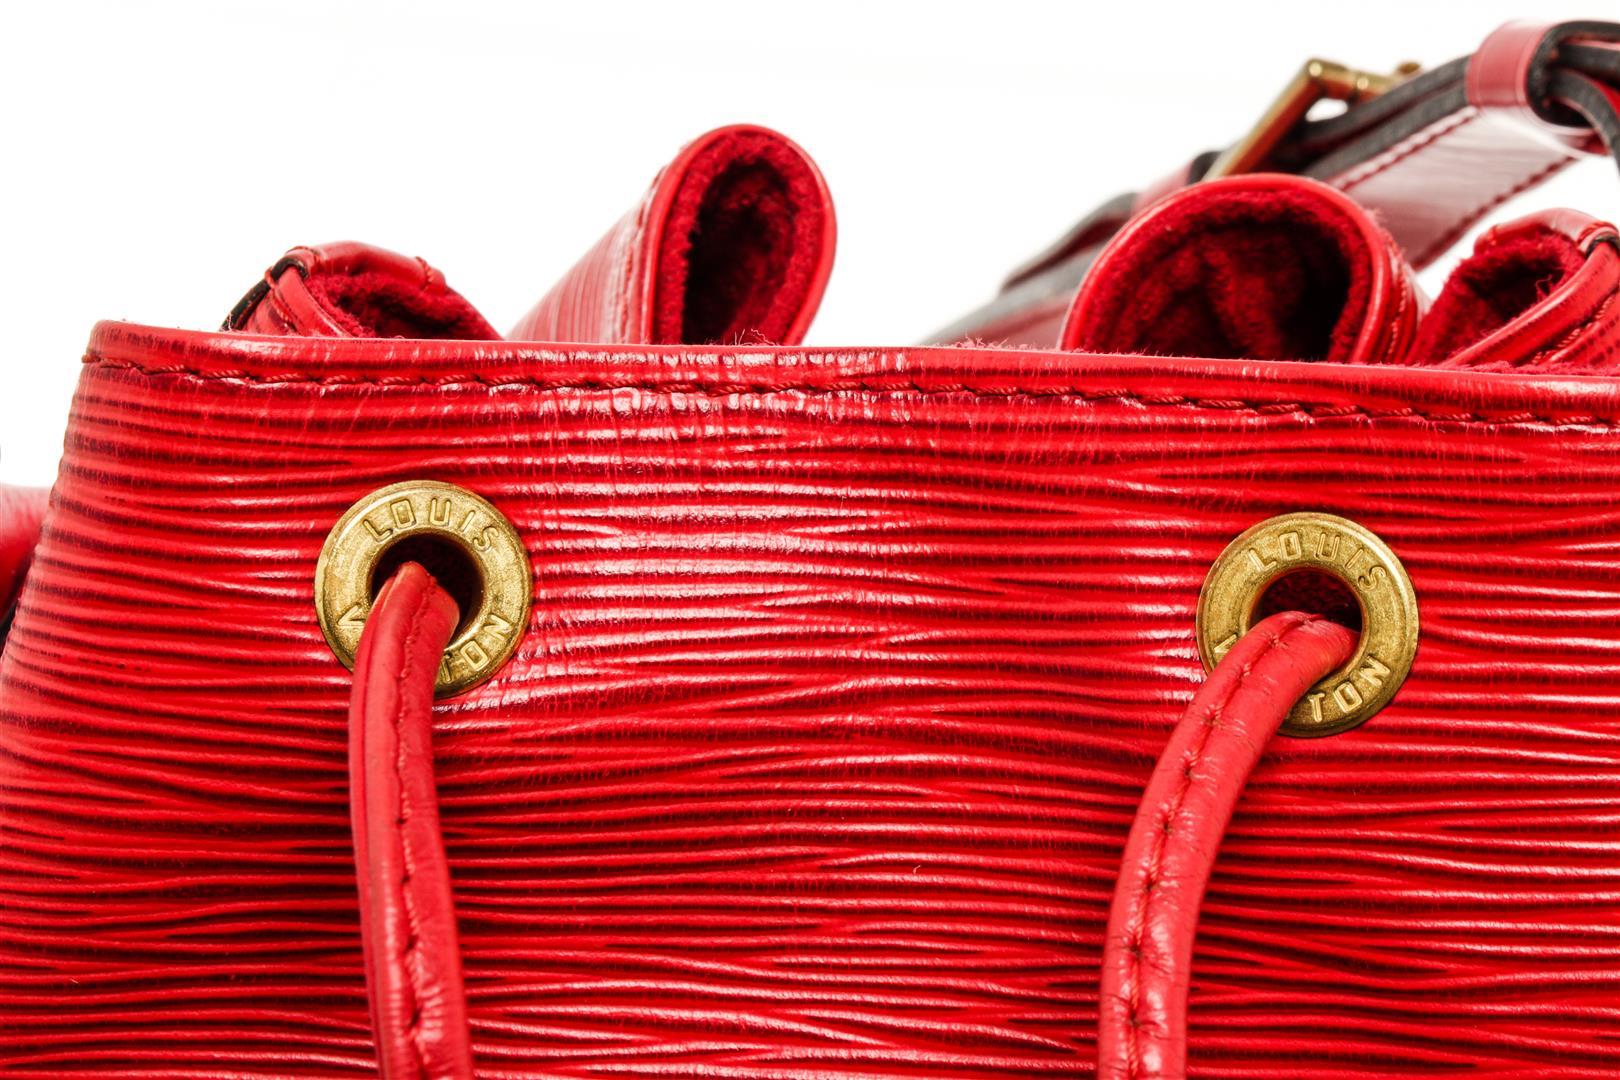 Louis Vuitton Red Epi Leather Noe Shoulder Bag